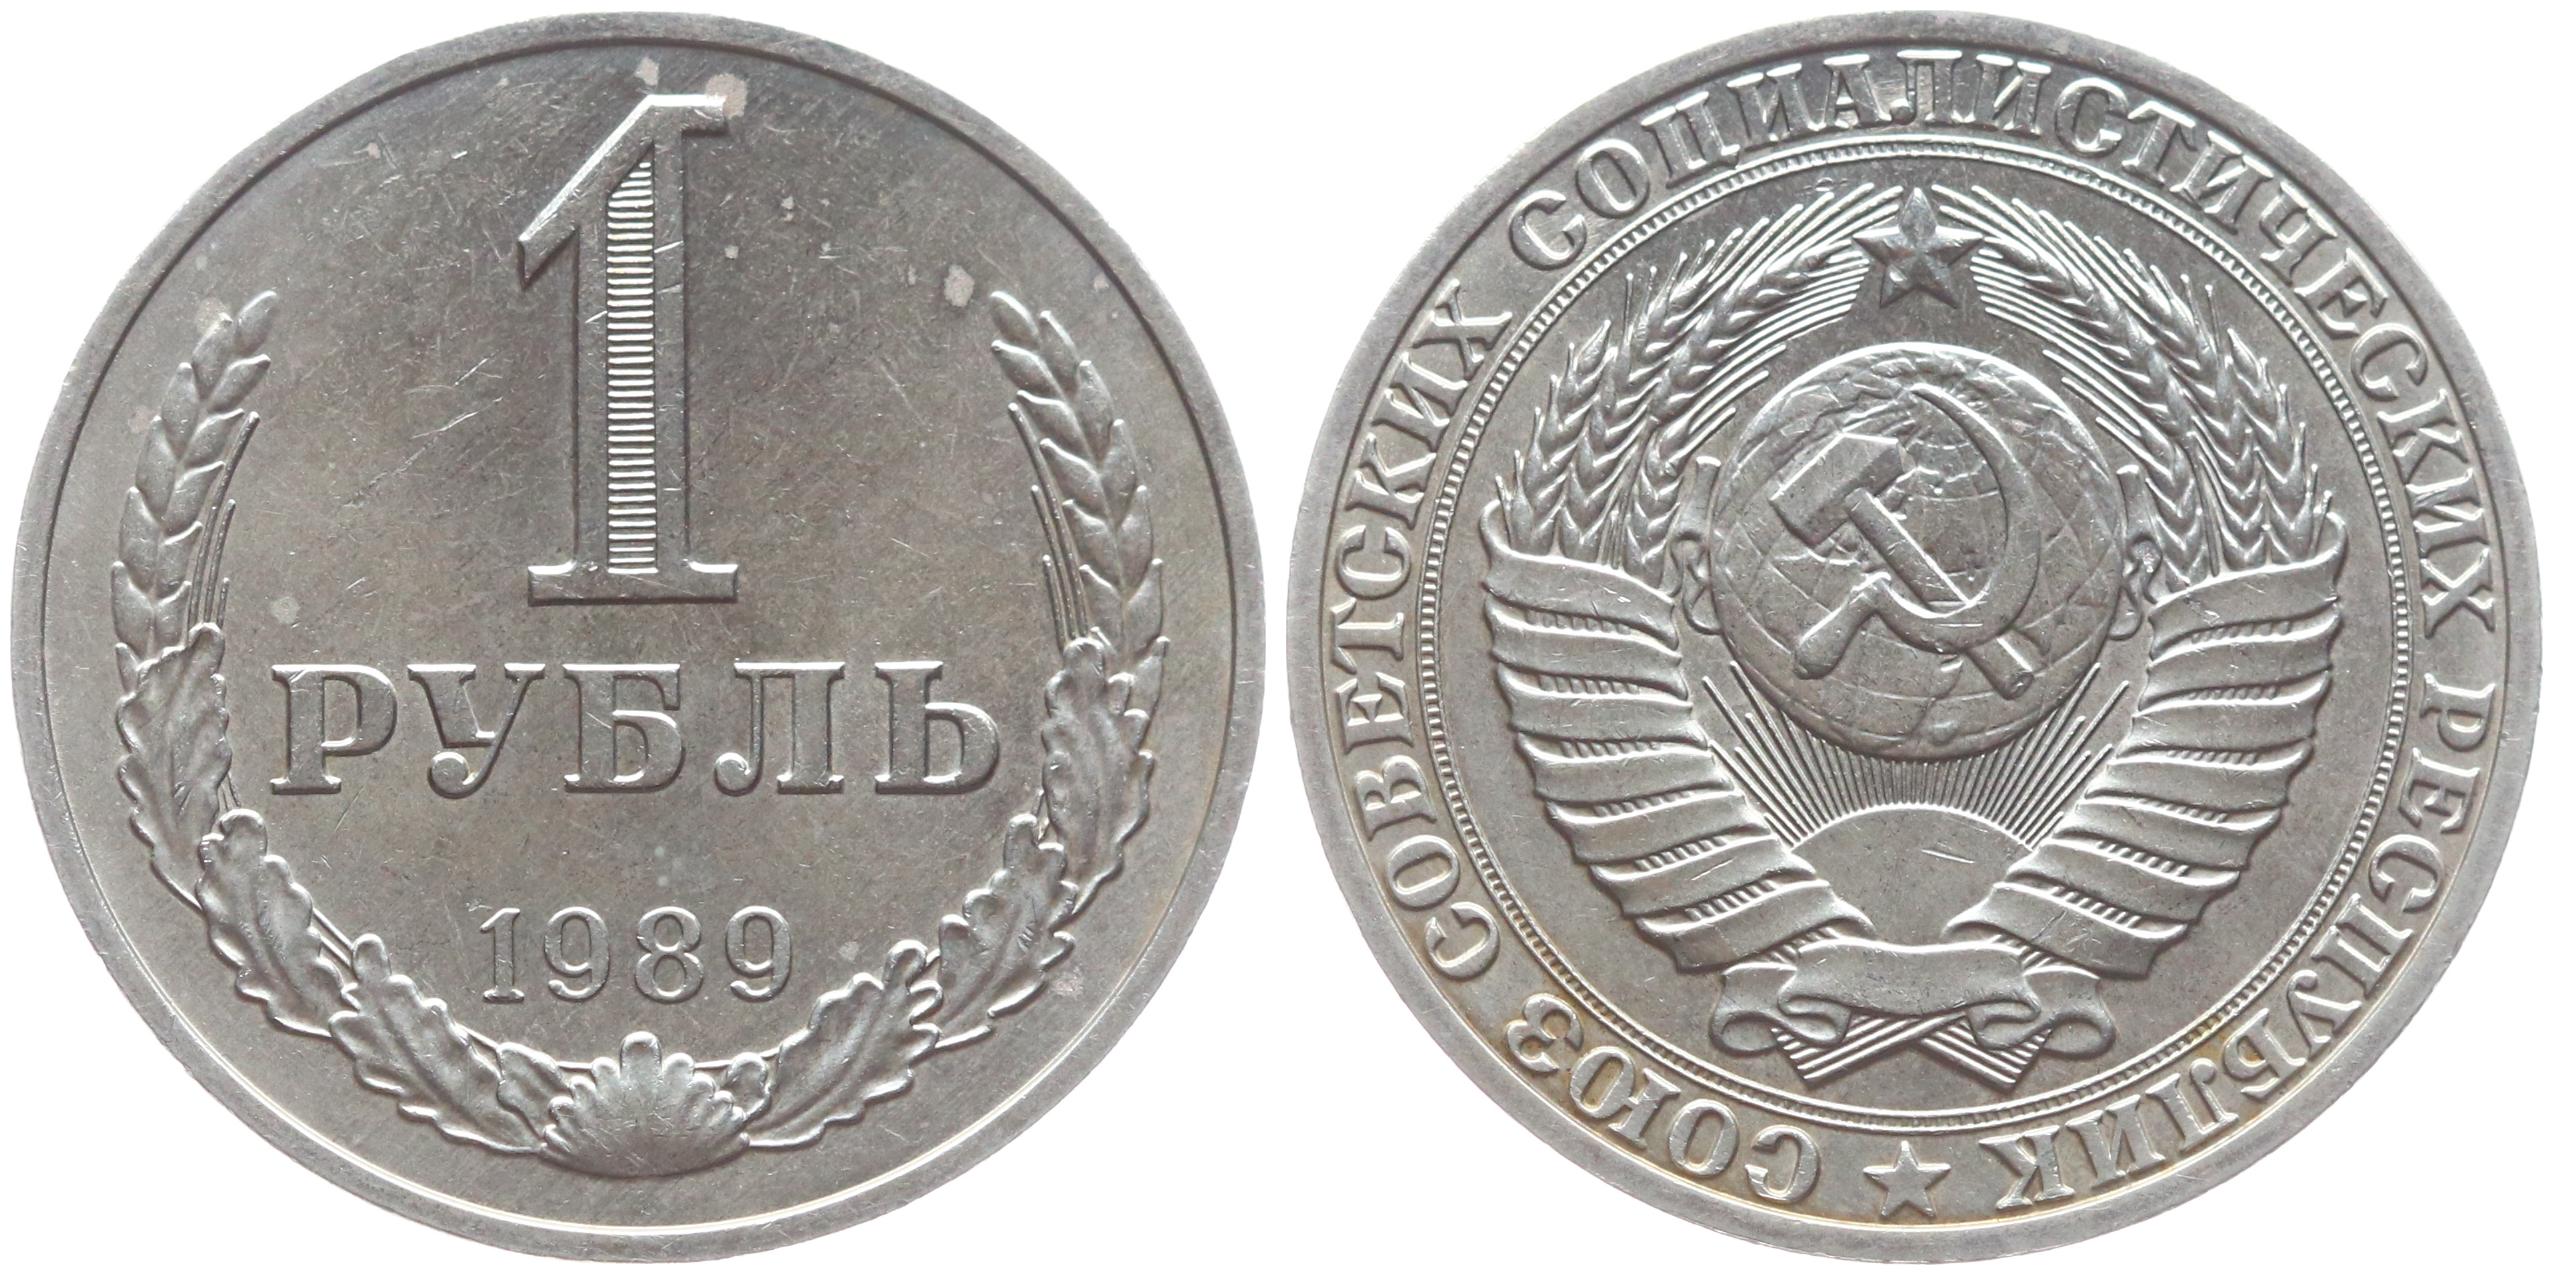 1 рубль в 80 е. 20 Копеек 1983. 50 Копеек 1991. 20 Копеек СССР 1983. Монеты СССР до 1961 года.